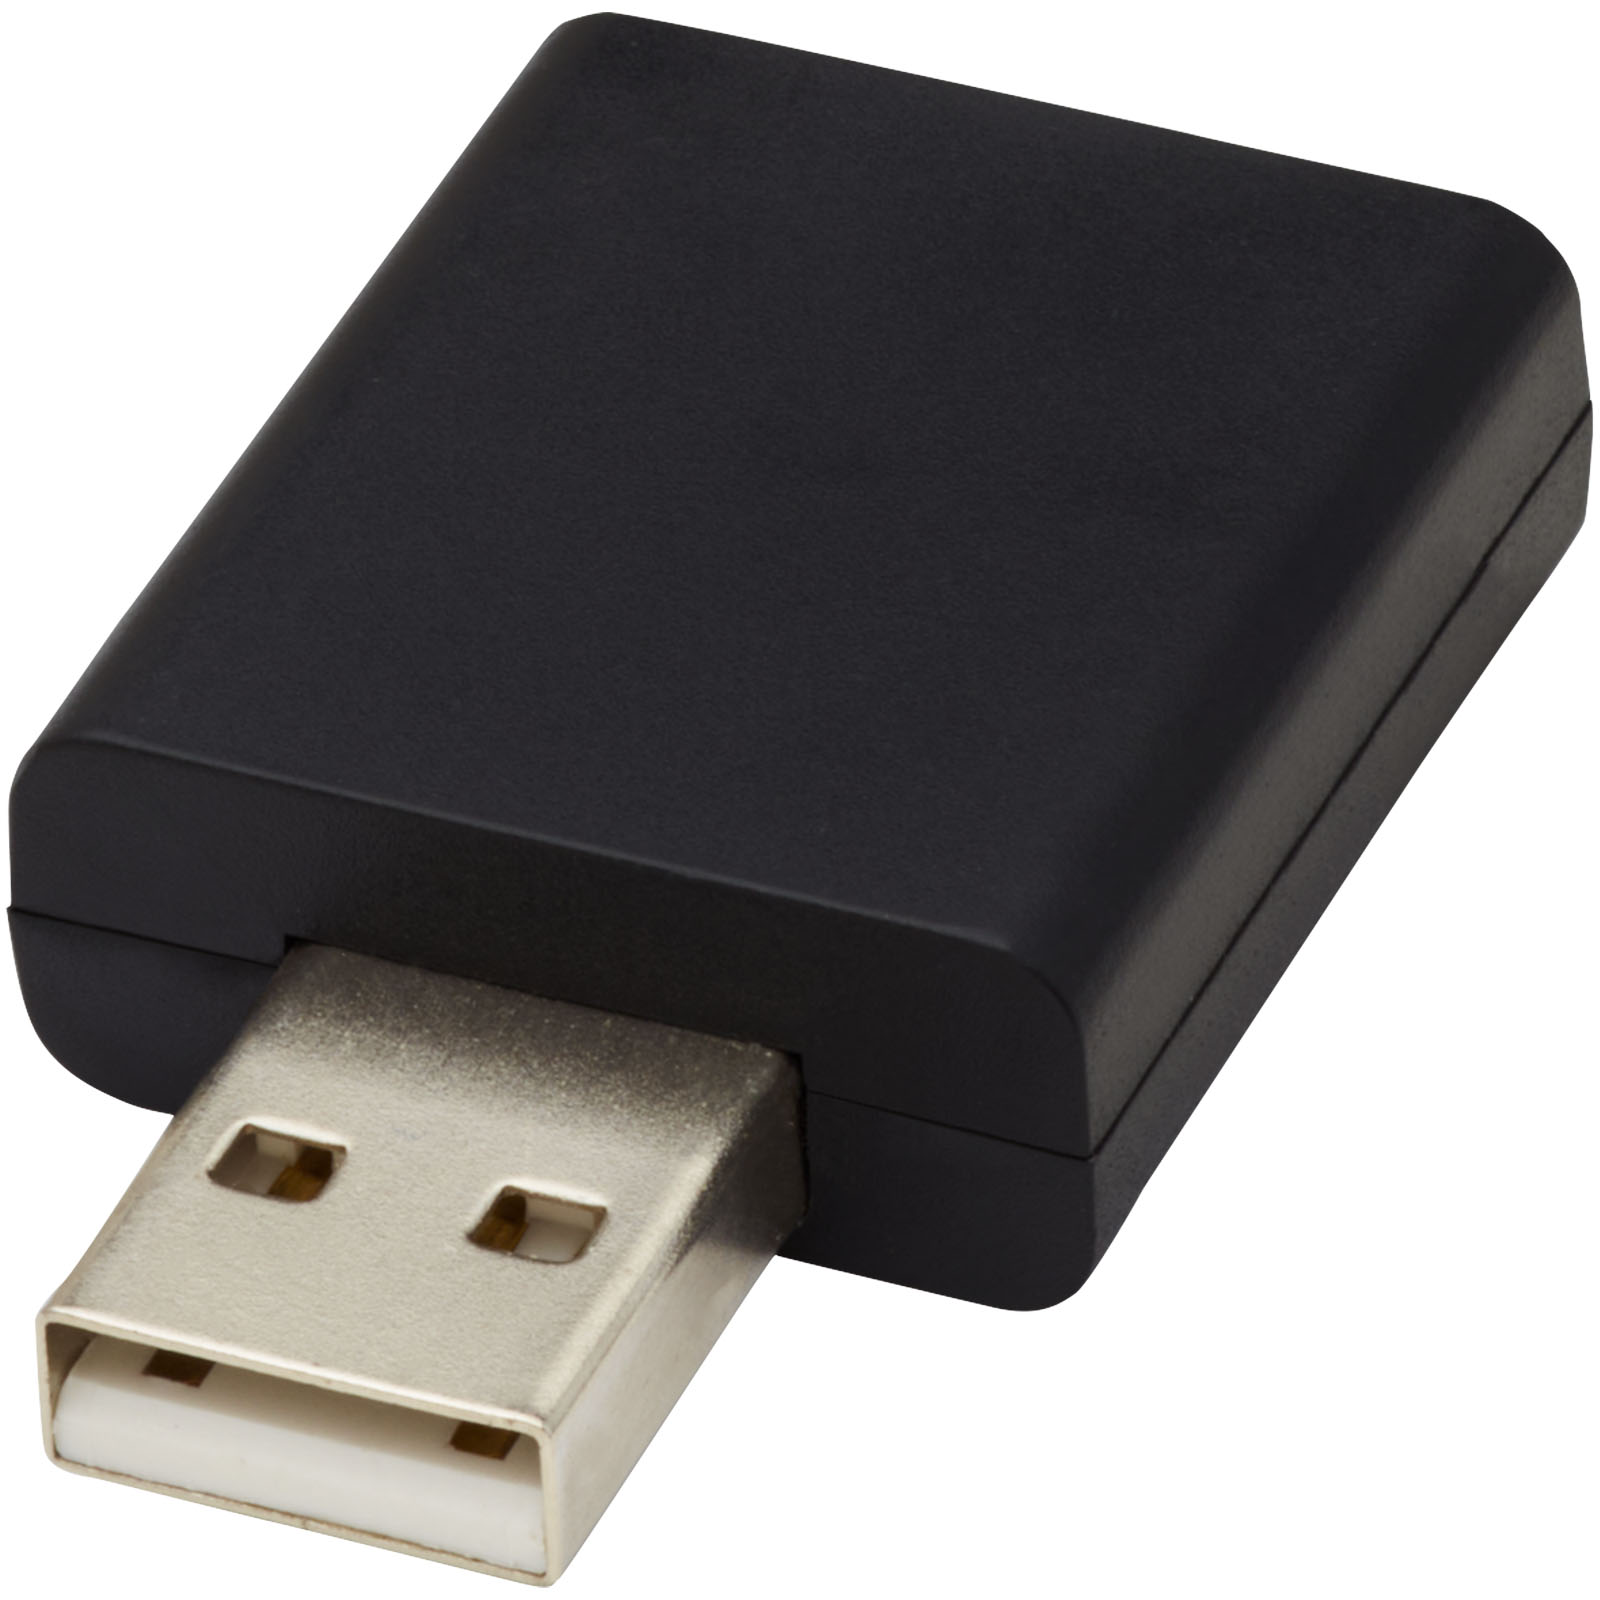 Advertising Computer Accessories - Incognito USB data blocker